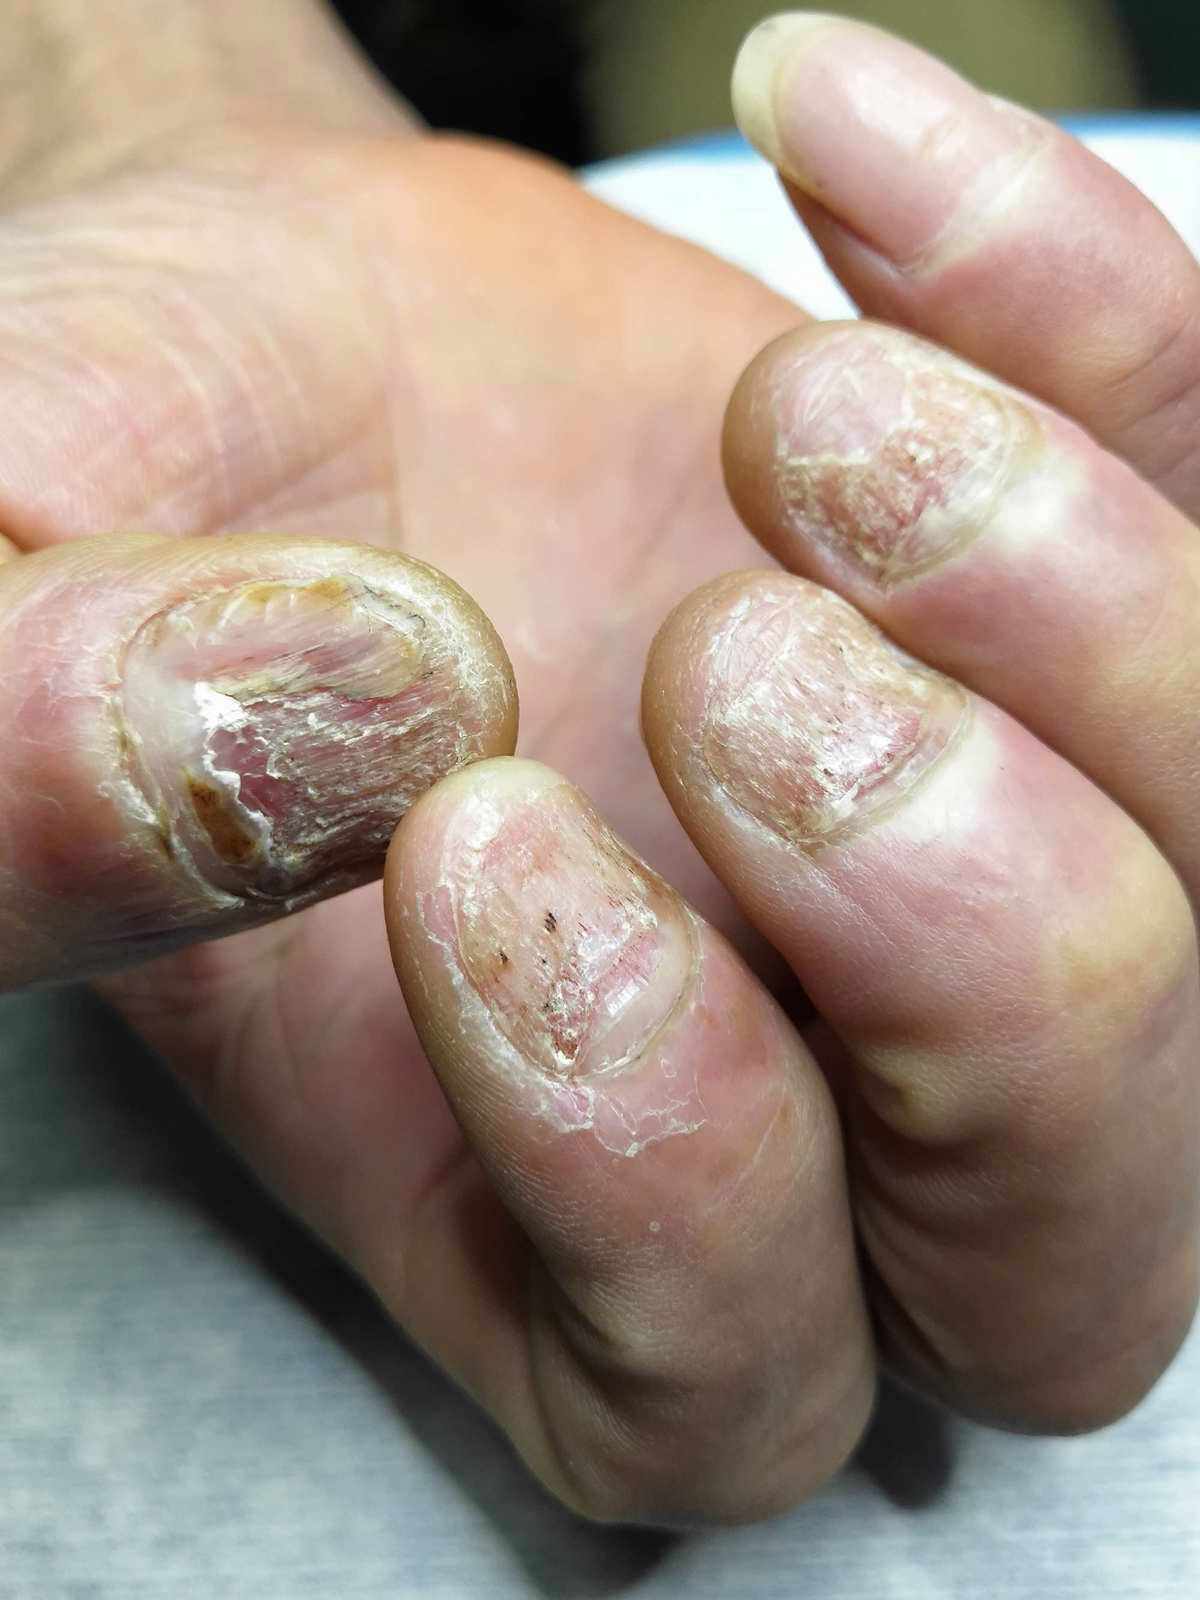 指甲真菌感染的症状图片